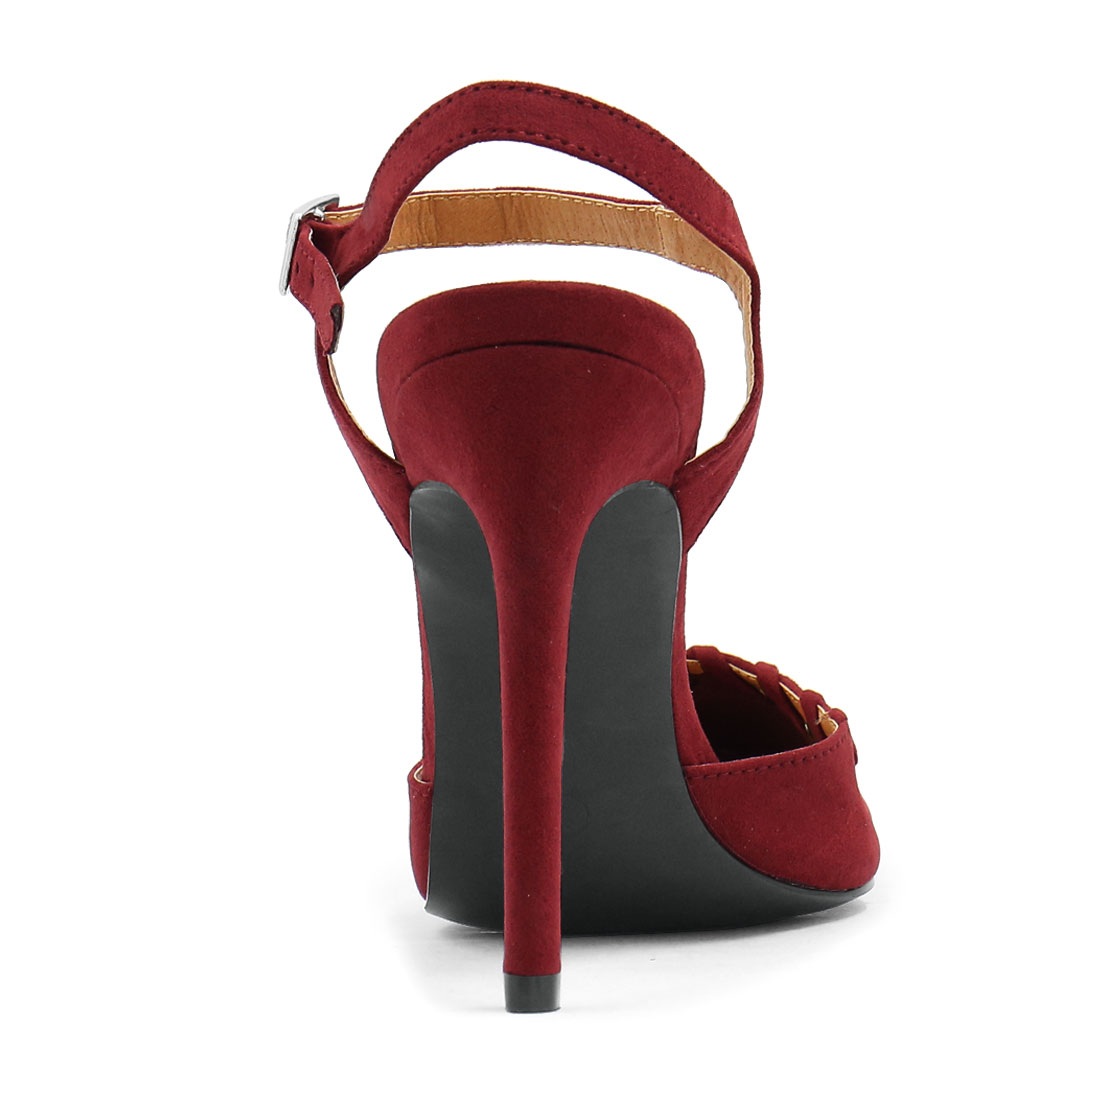 Unique Bargains Women's Pointed Toe Stiletto Lace Up Decor Ankle Strap Pumps Red (Size 7.5)